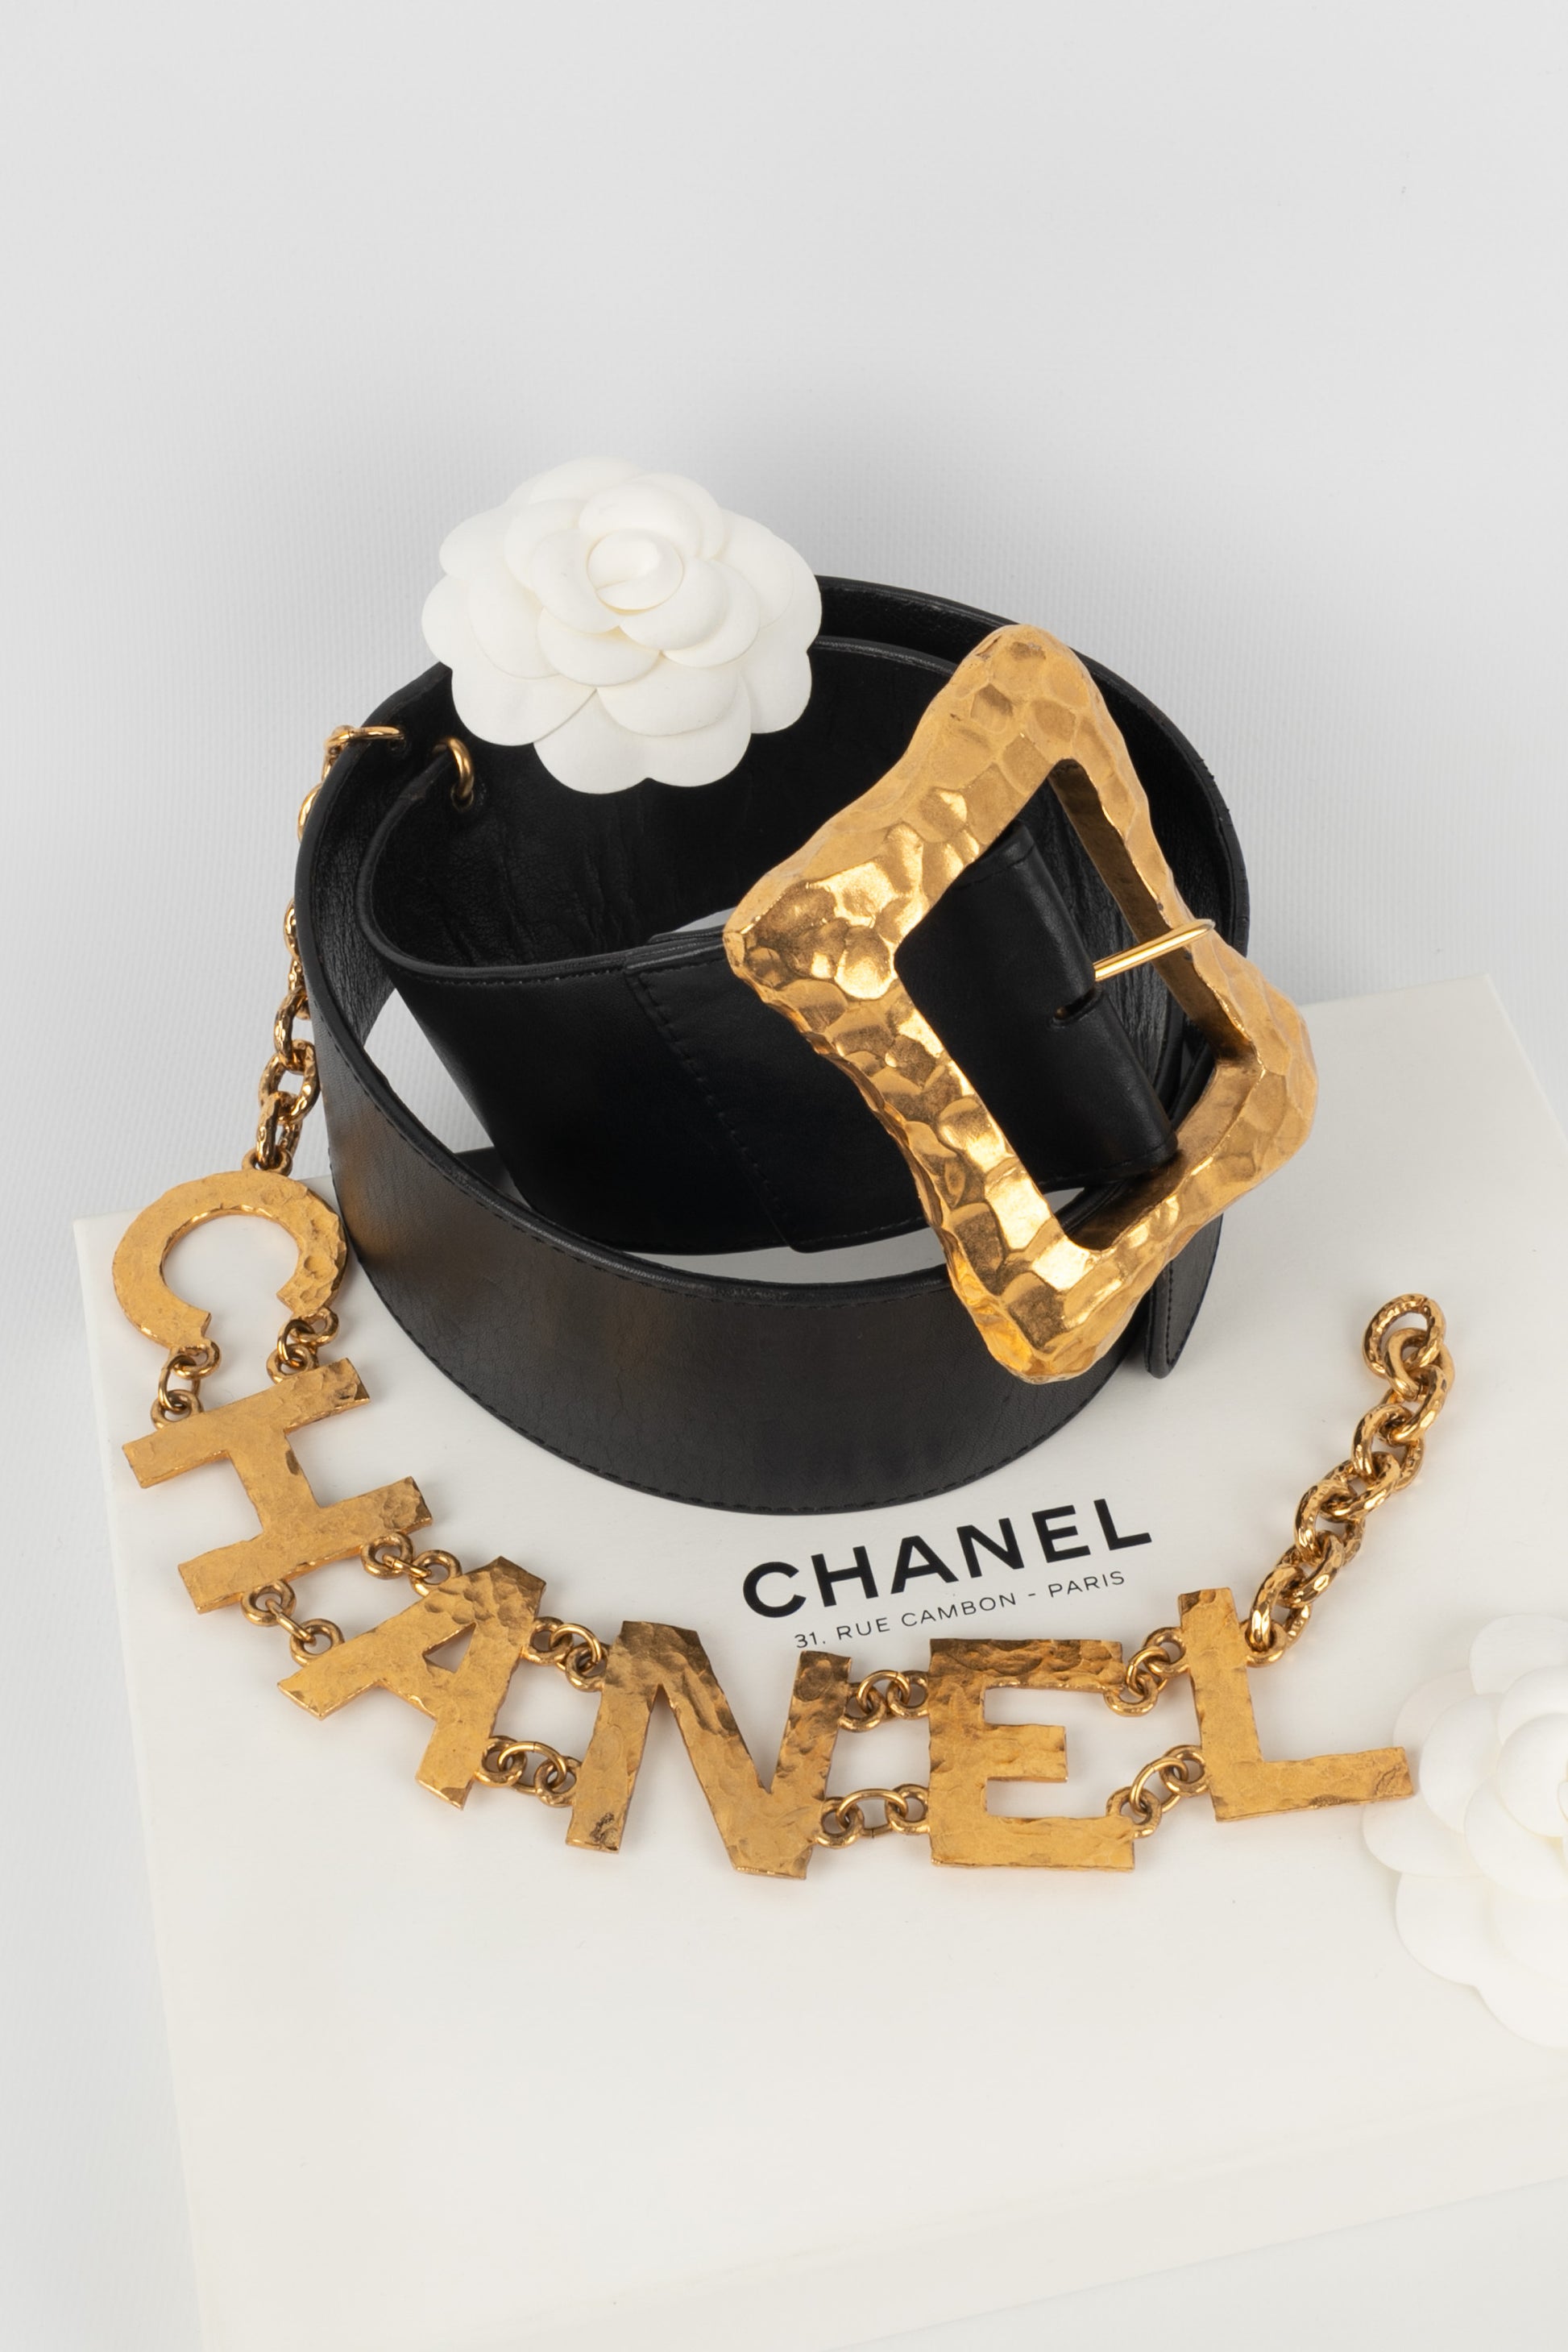 Ceinture Chanel 1993